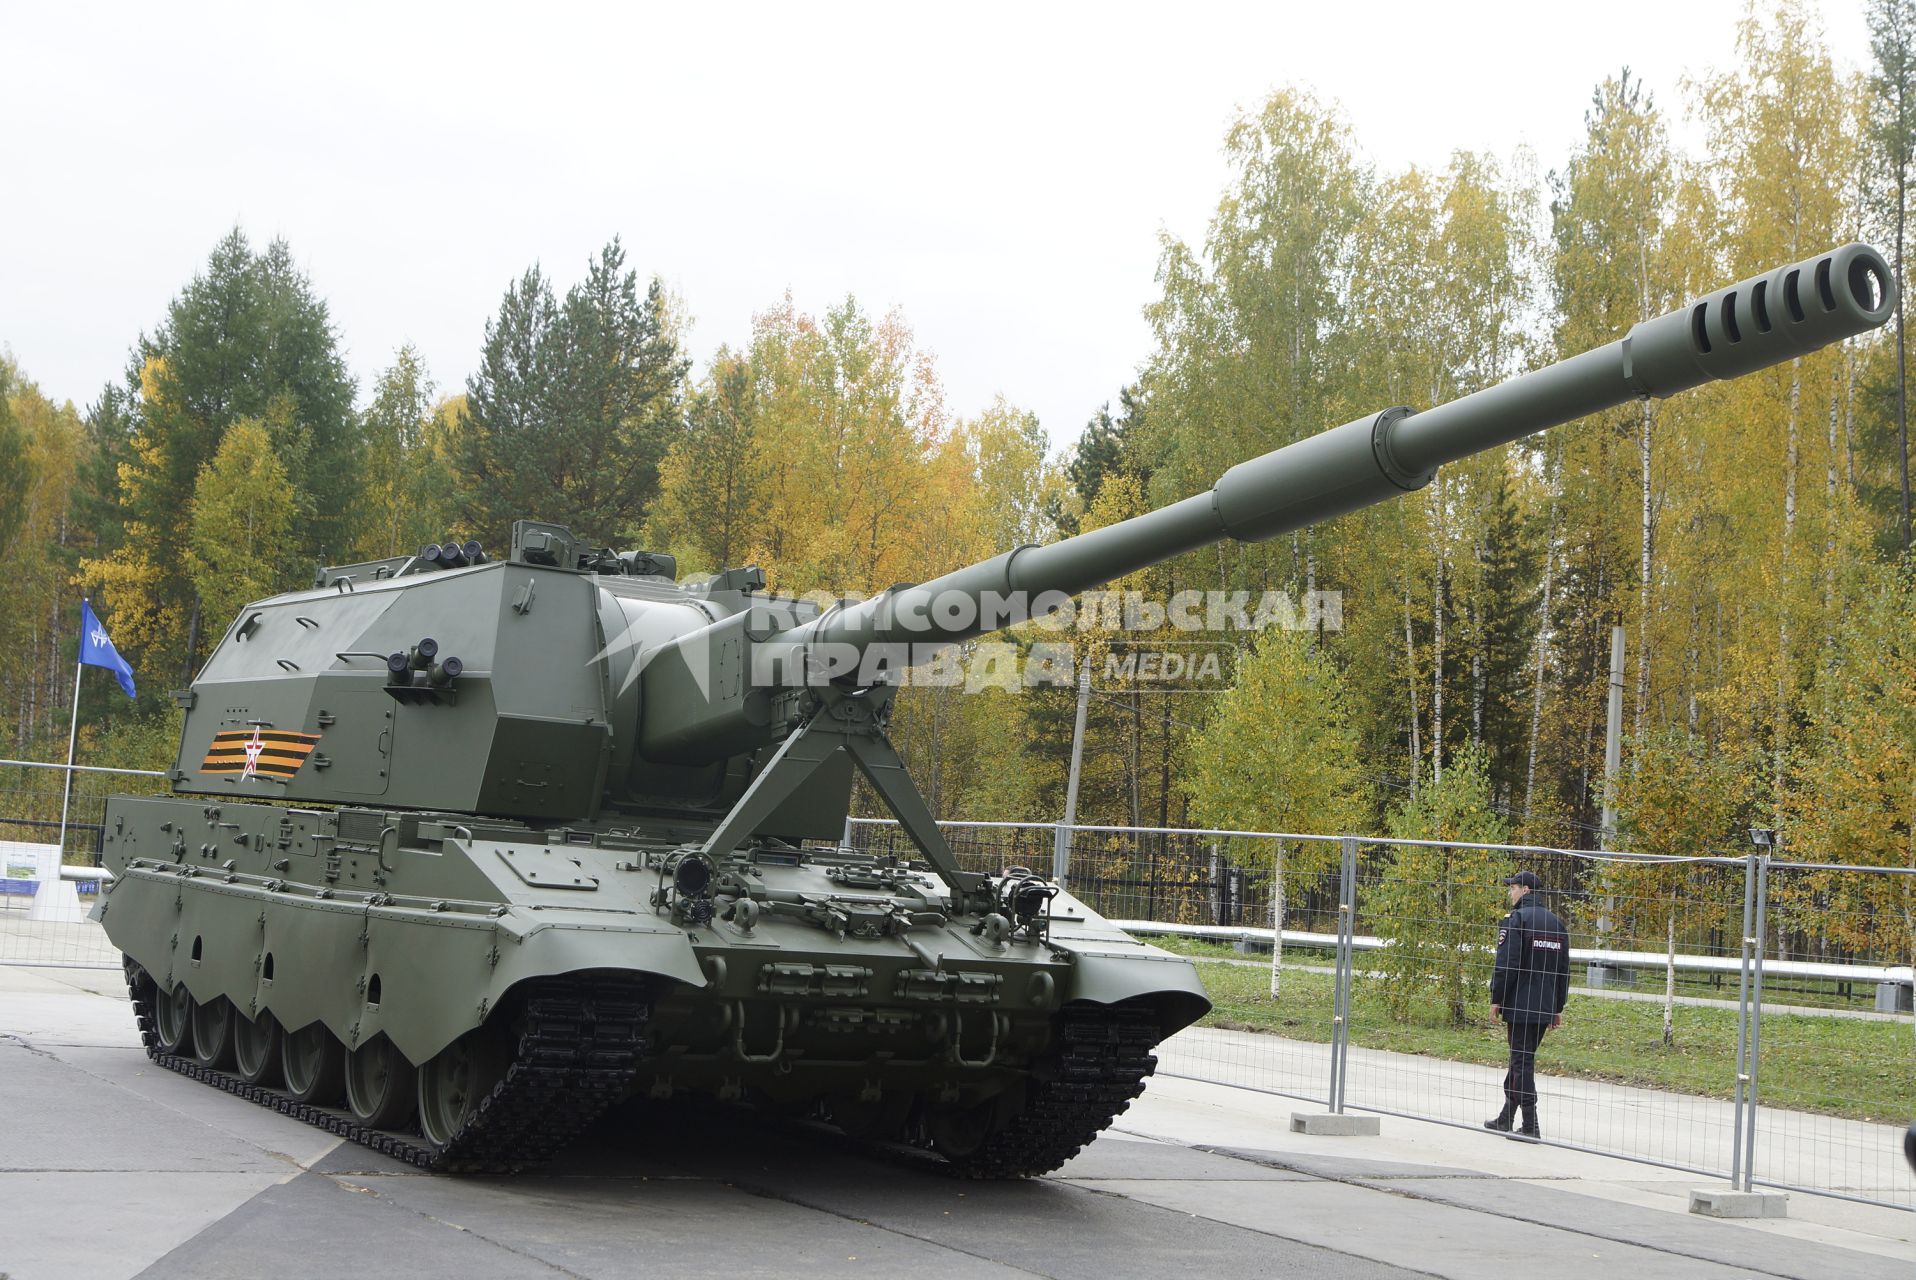 Нижний Тагил. Самоходная артиллерийская установка `Коалиция` на 10-ой международной выставке вооружений `Russia Arms Expo - 2015`.